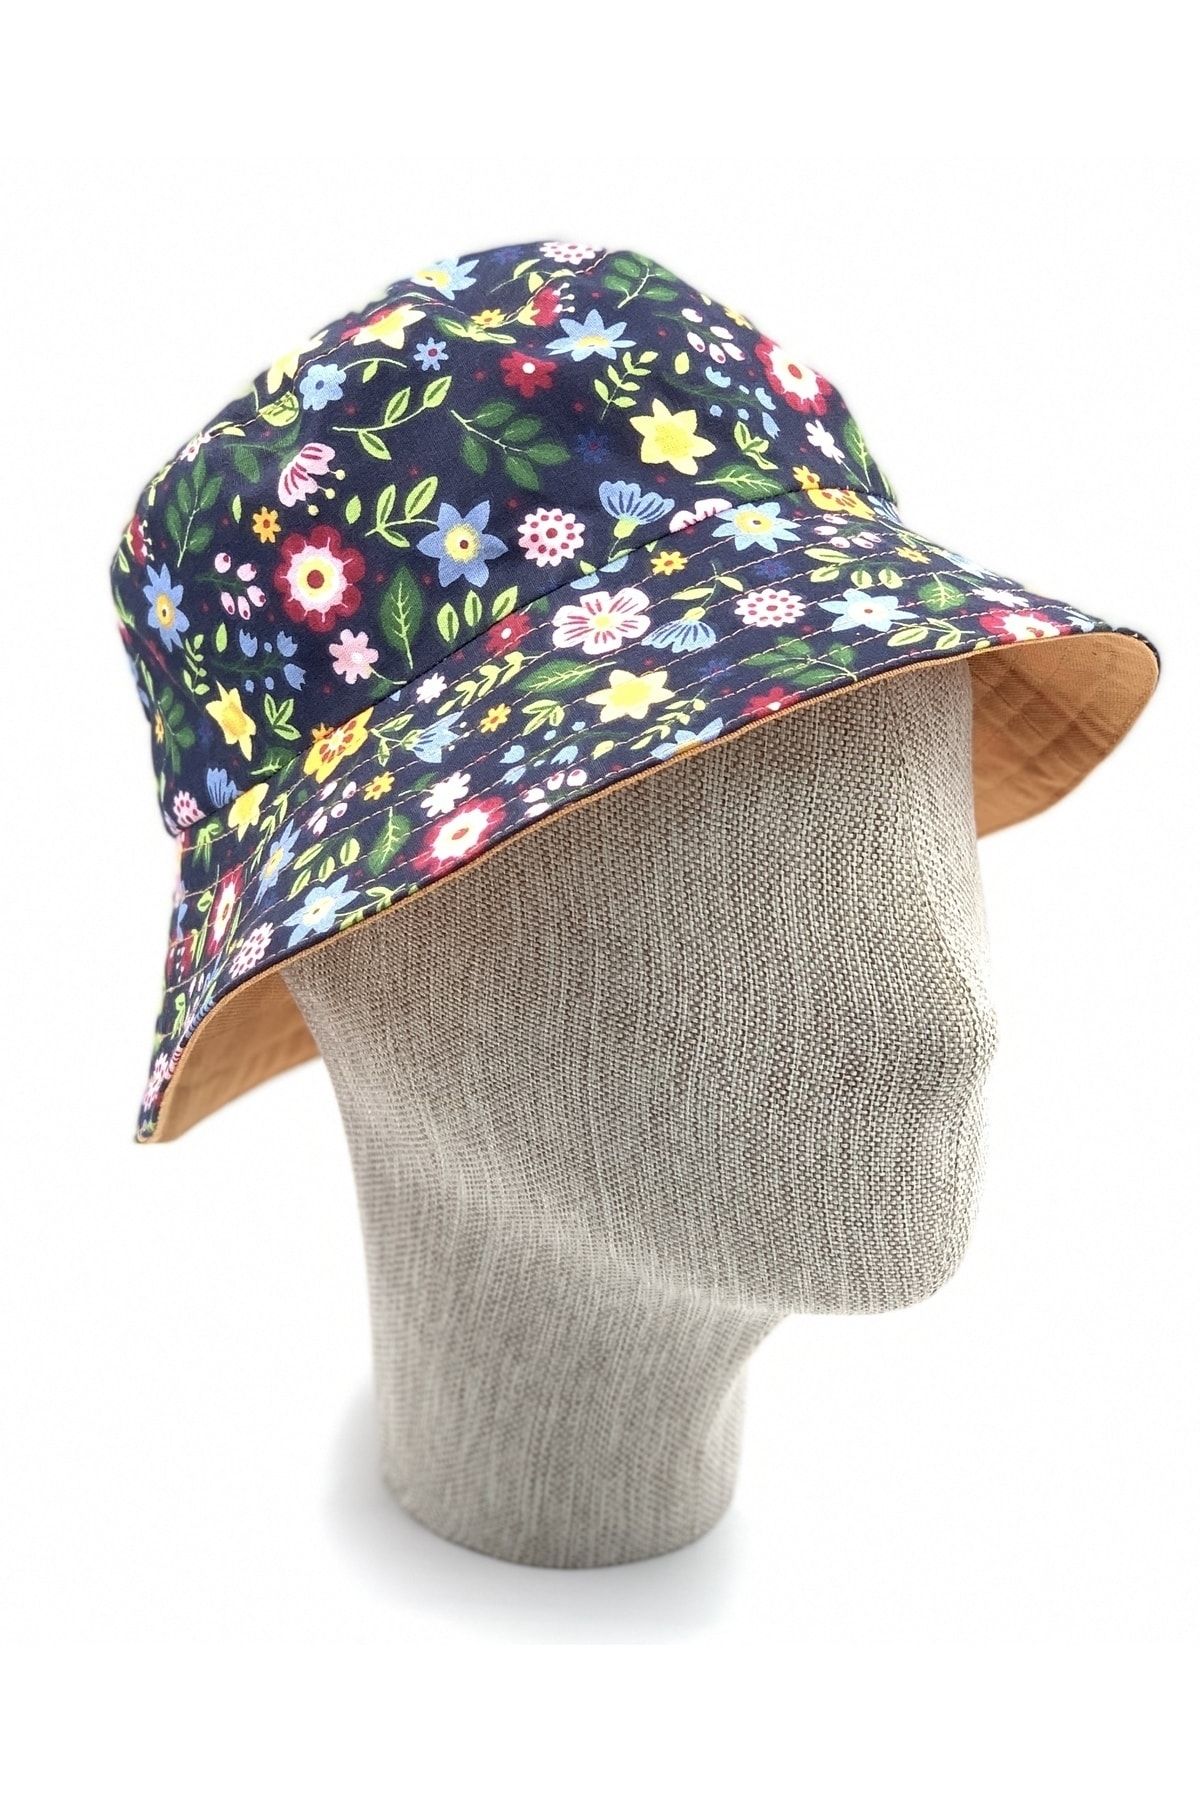 ZELİCE TASARIM Renkli Çiçekli / Turuncu Çift Taraf Kullanılabilen Bucket Kadın Şapka Bsp05